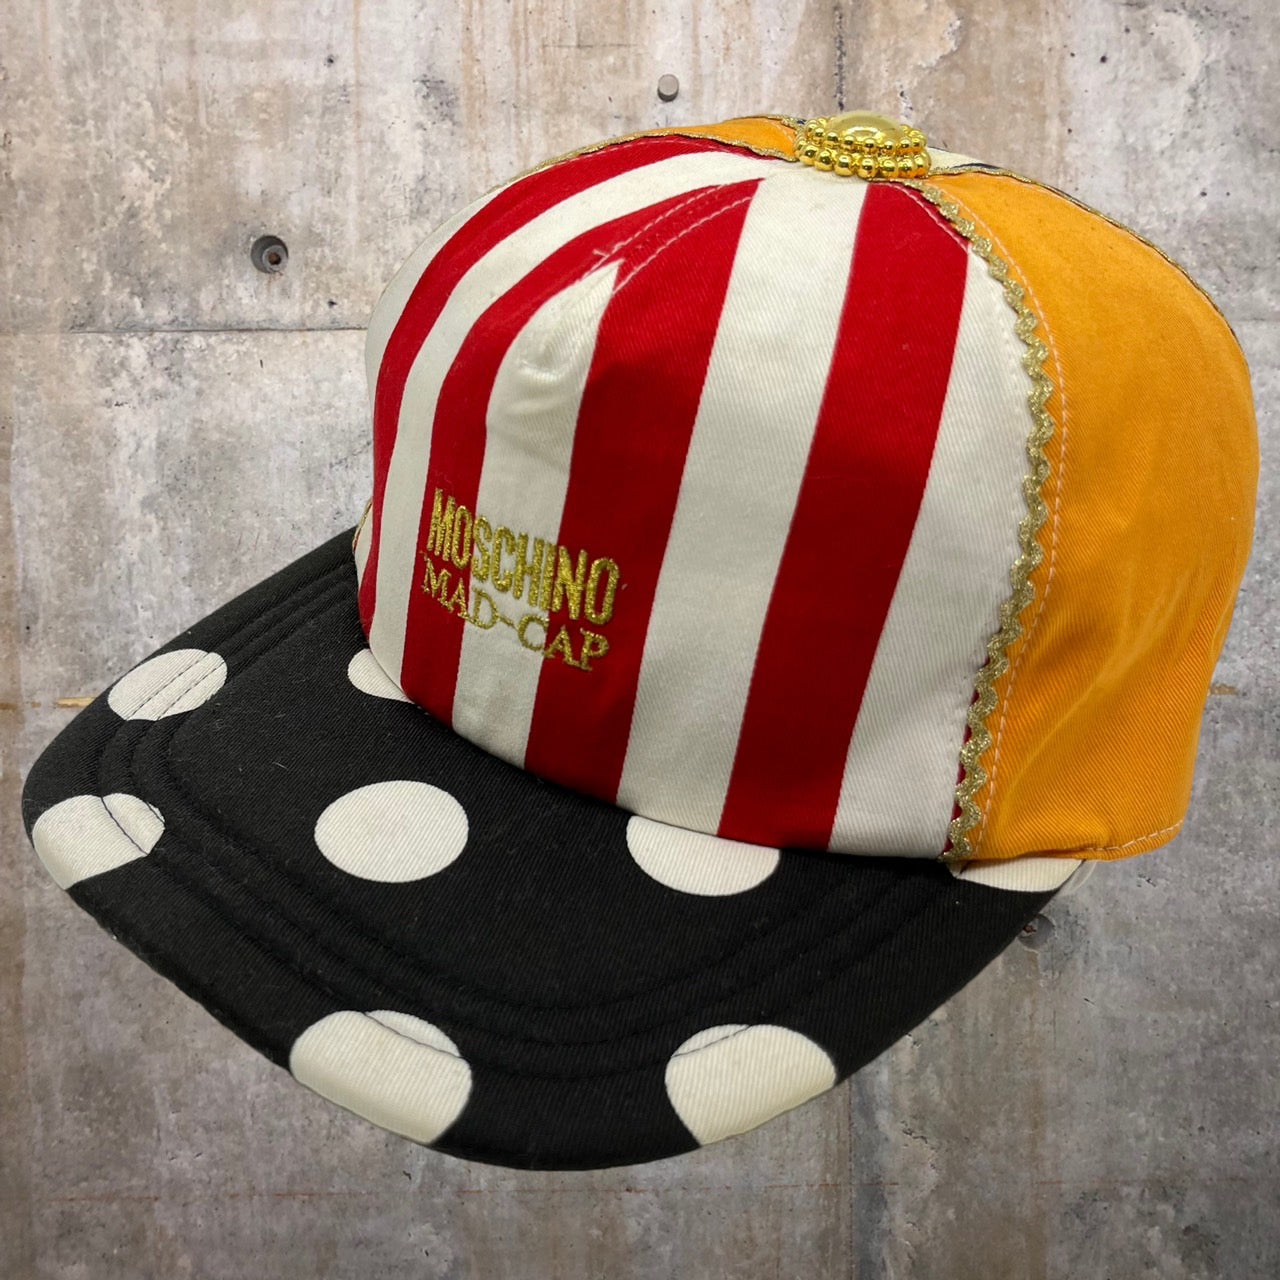 MOSCHINO(モスキーノ) 90's MAD CAP/キャップ/帽子 ミックス